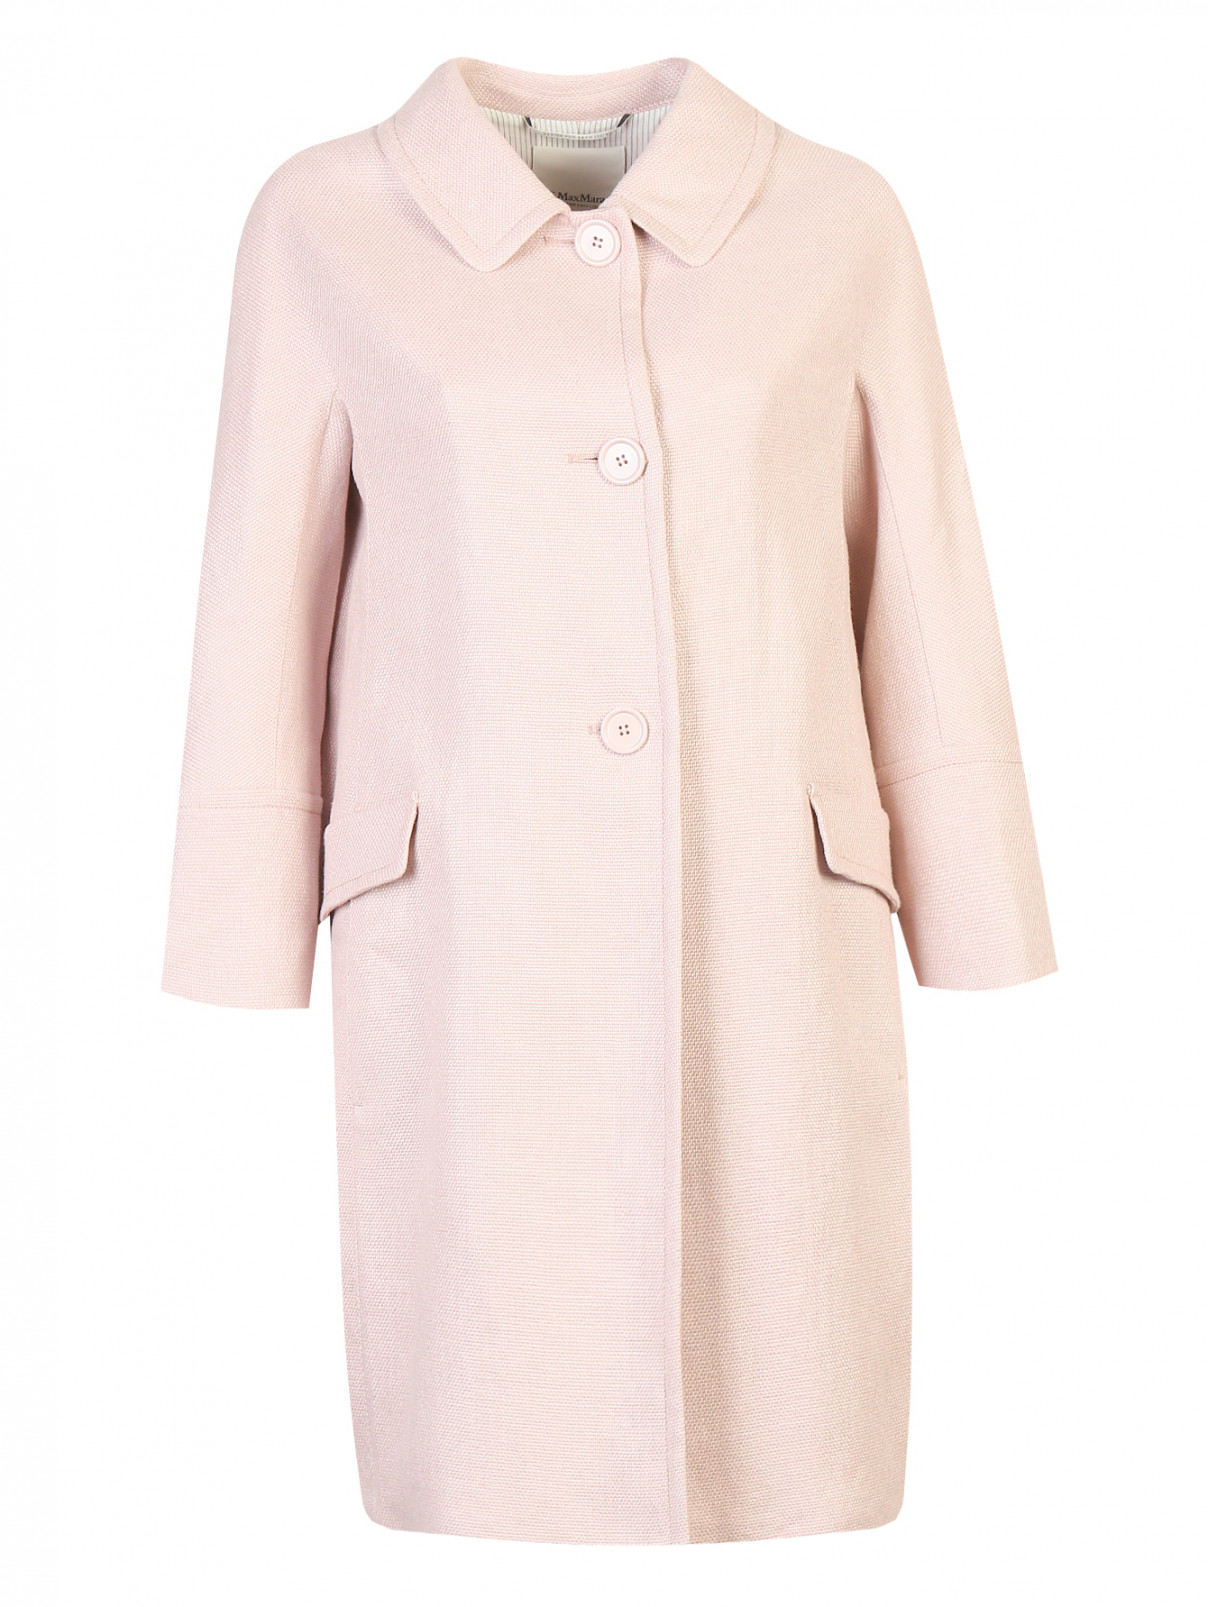 Пальто из льна и хлопка на пуговицах Max Mara  –  Общий вид  – Цвет:  Розовый